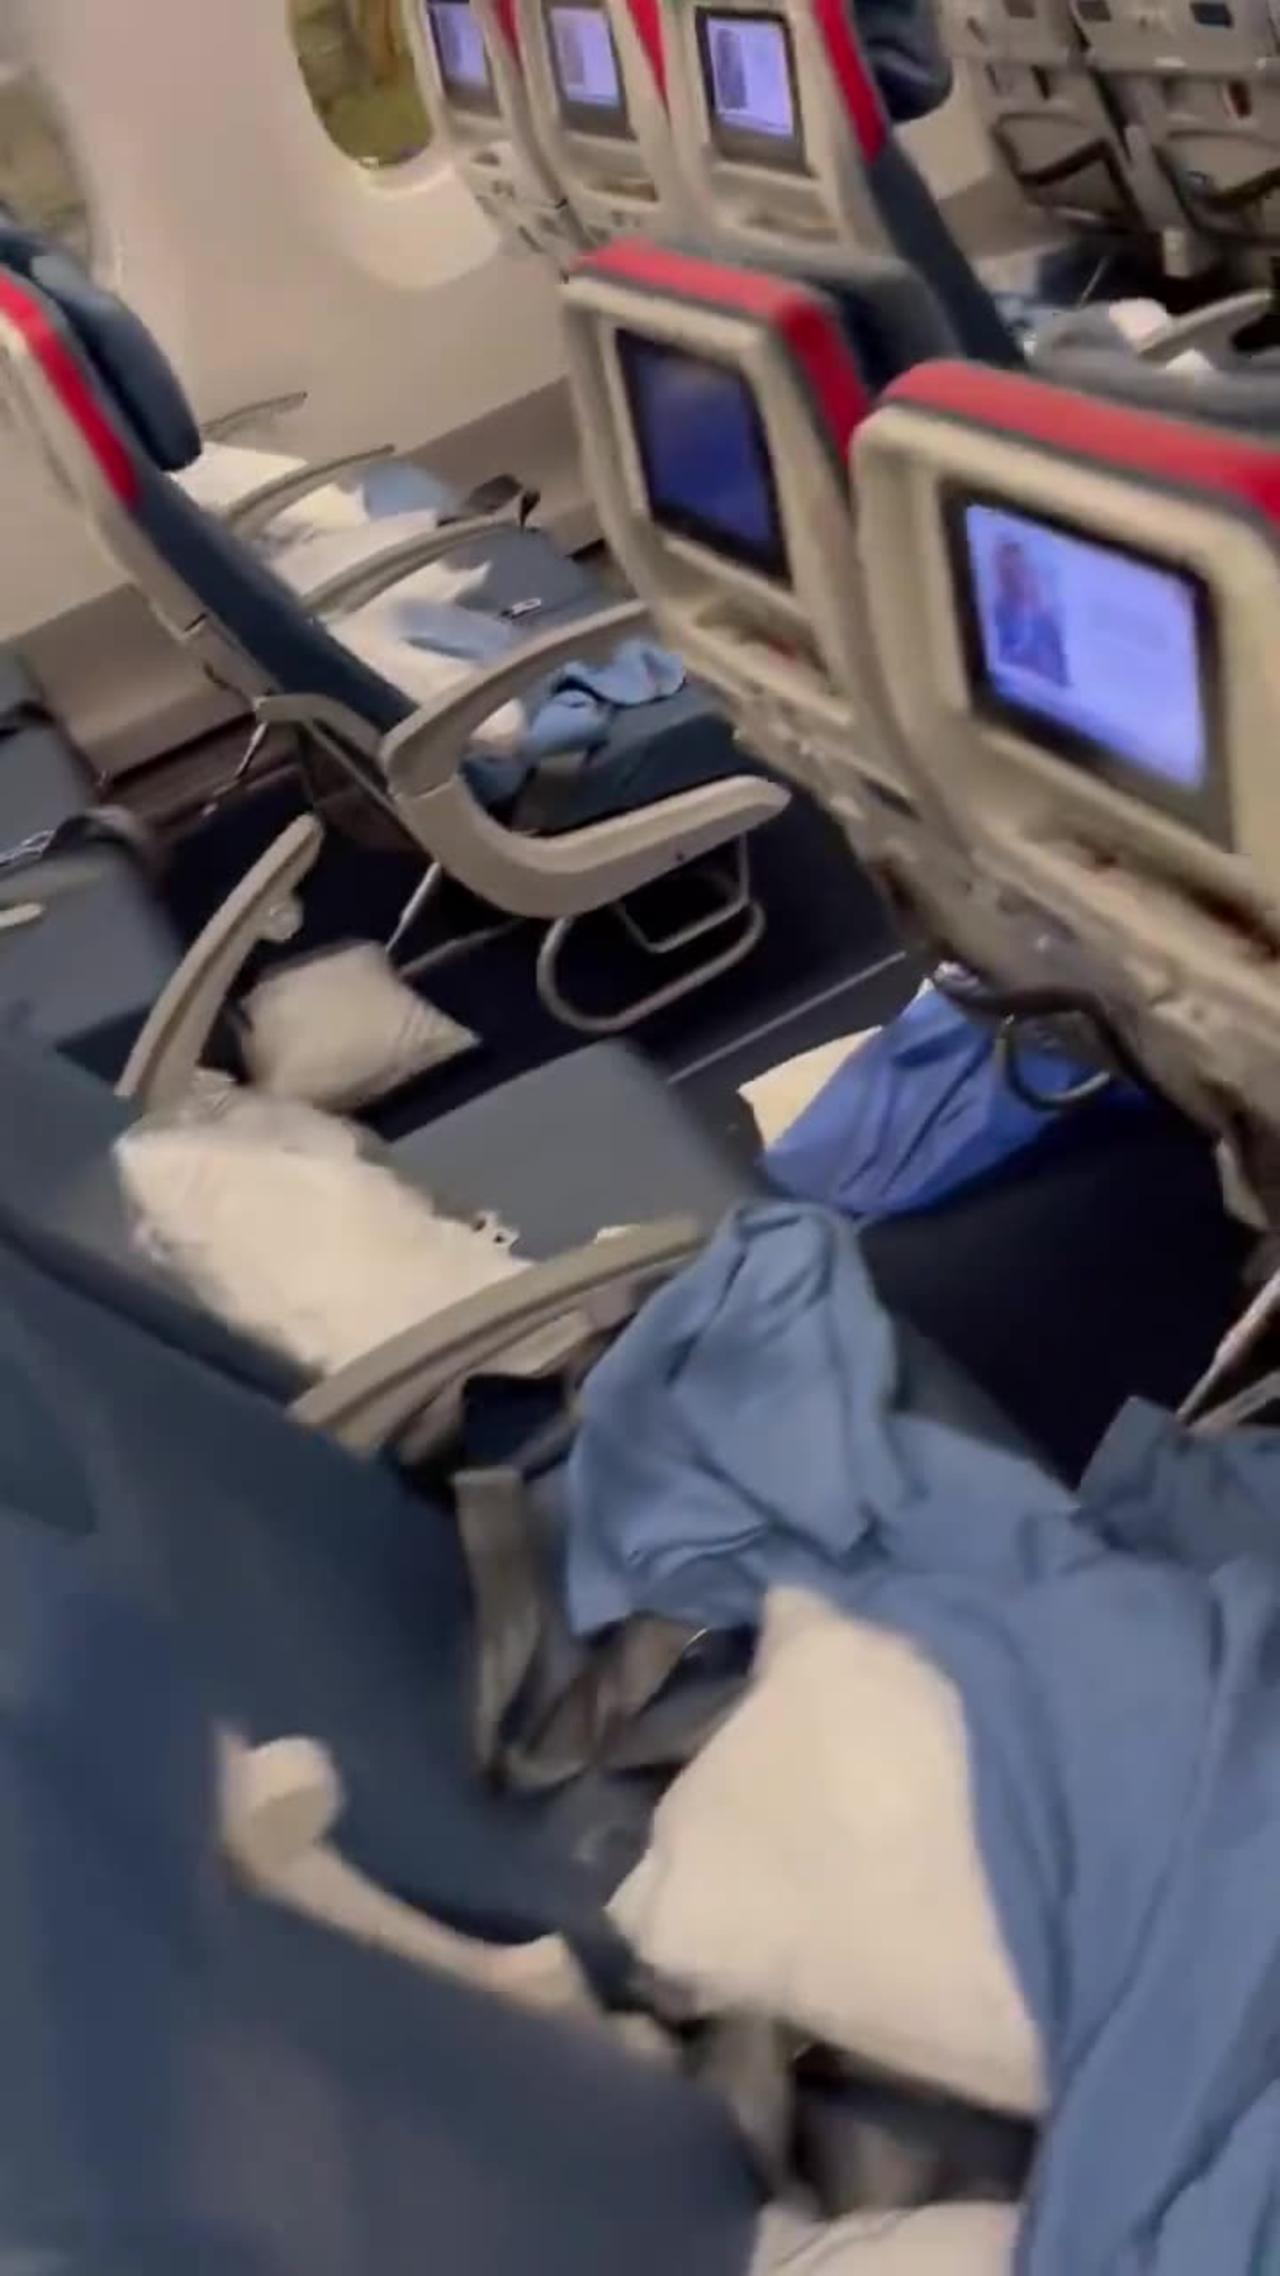 A Delta flight made an emergency landing because of passenger’s diarrhea trail